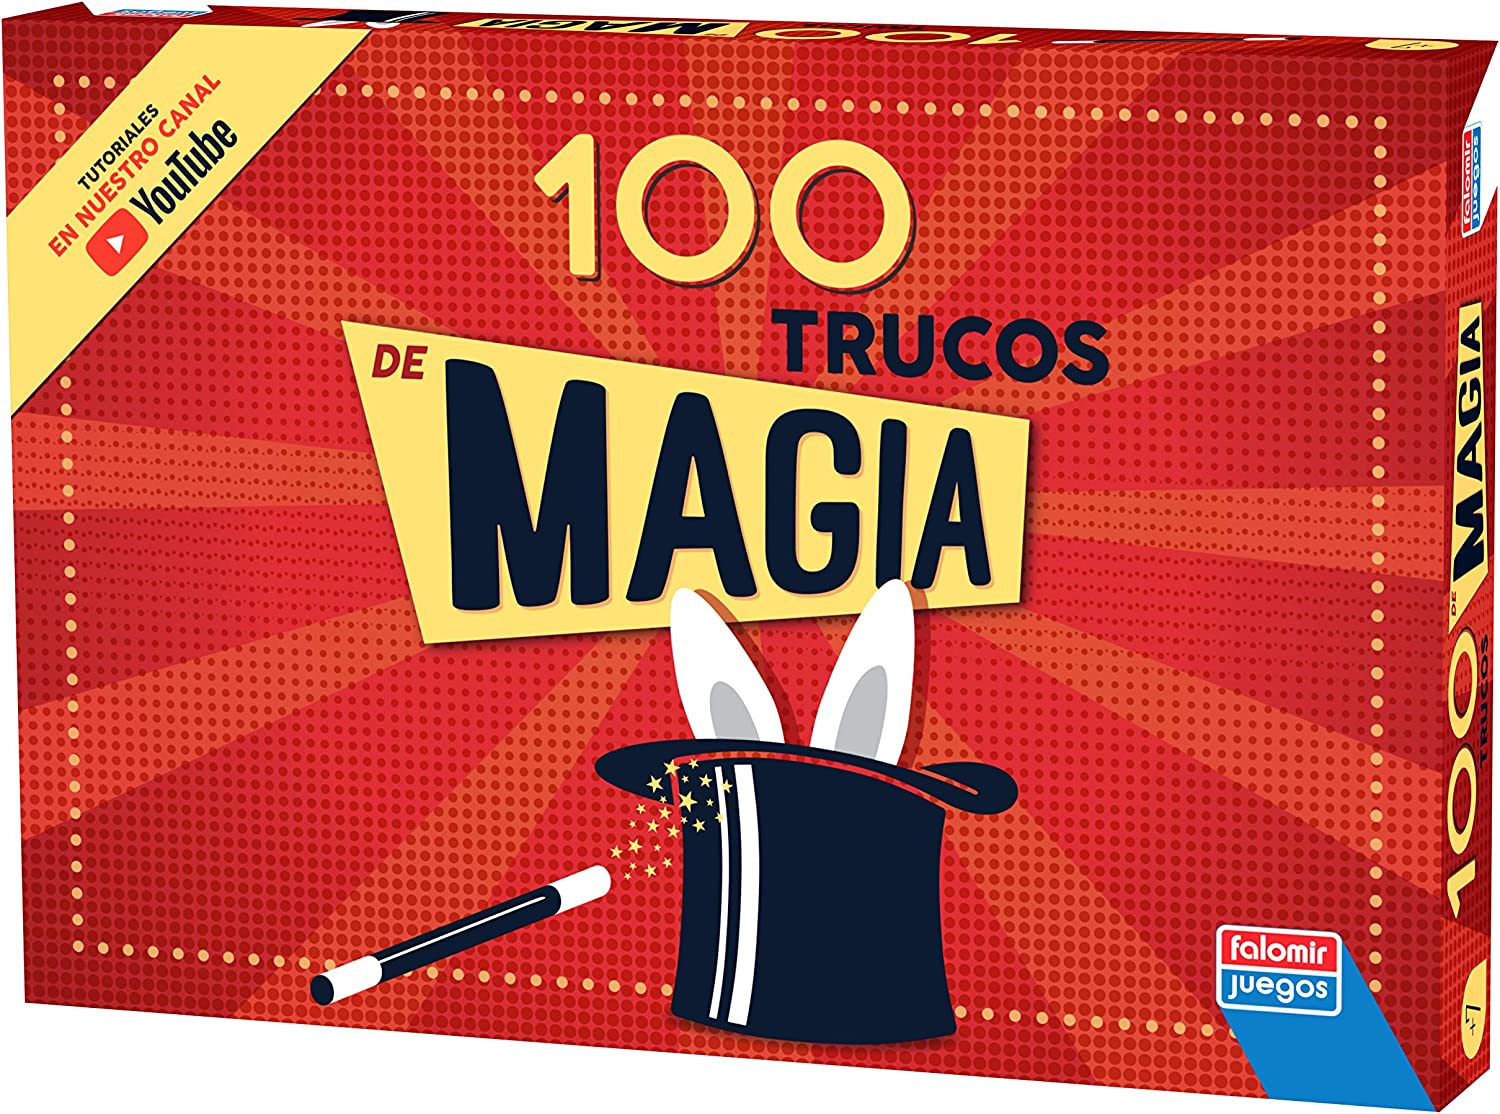 CAJA MAGIA 100 TRUCOS 1060 - V12323